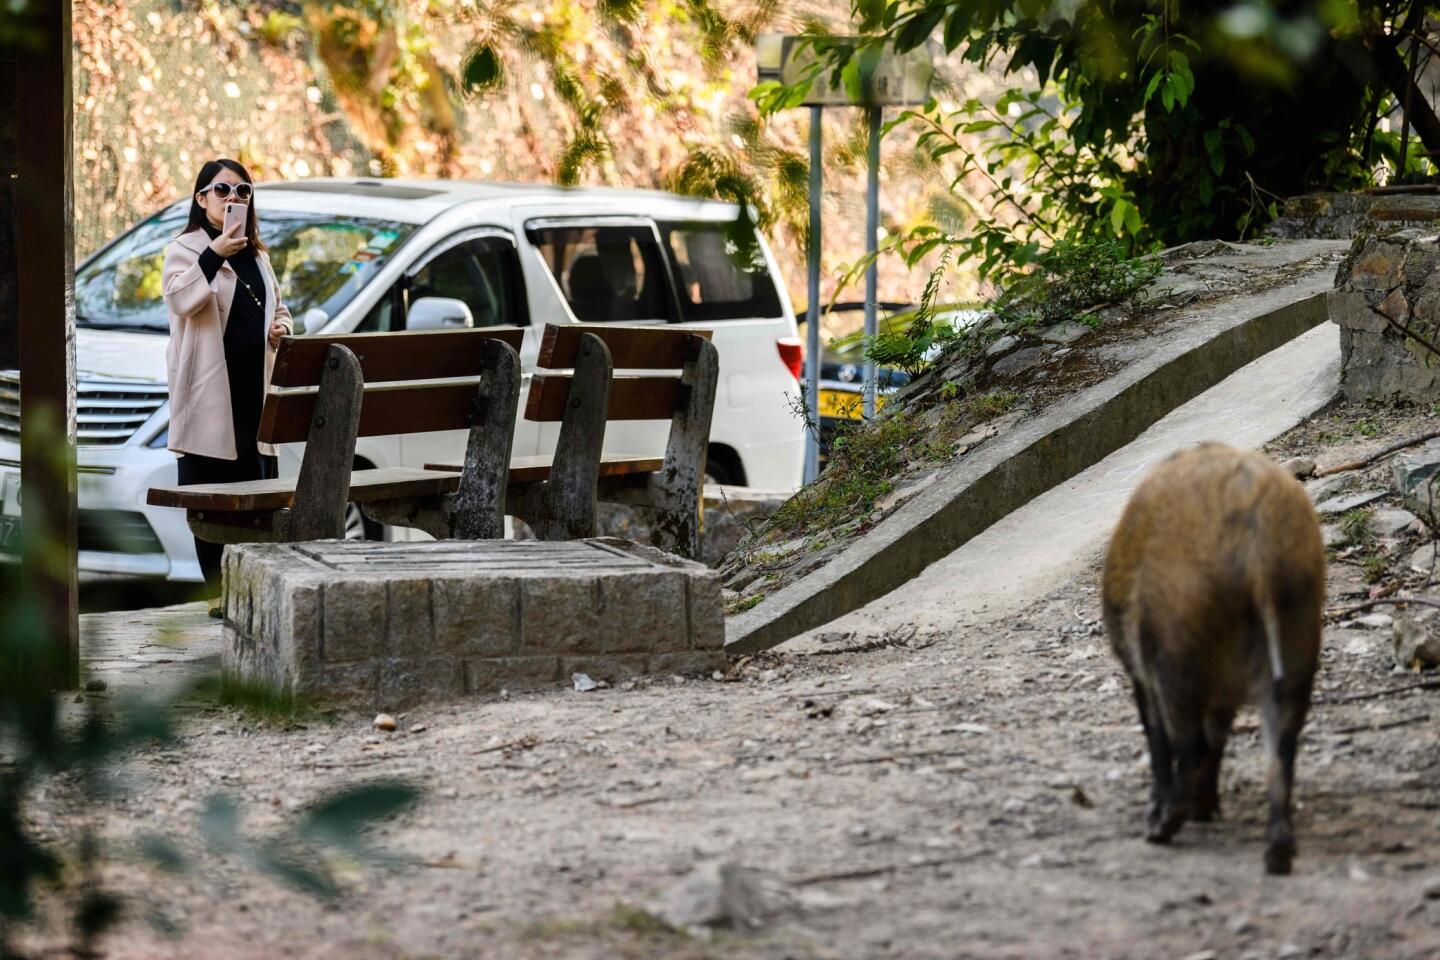 Hong Kong's wild boars